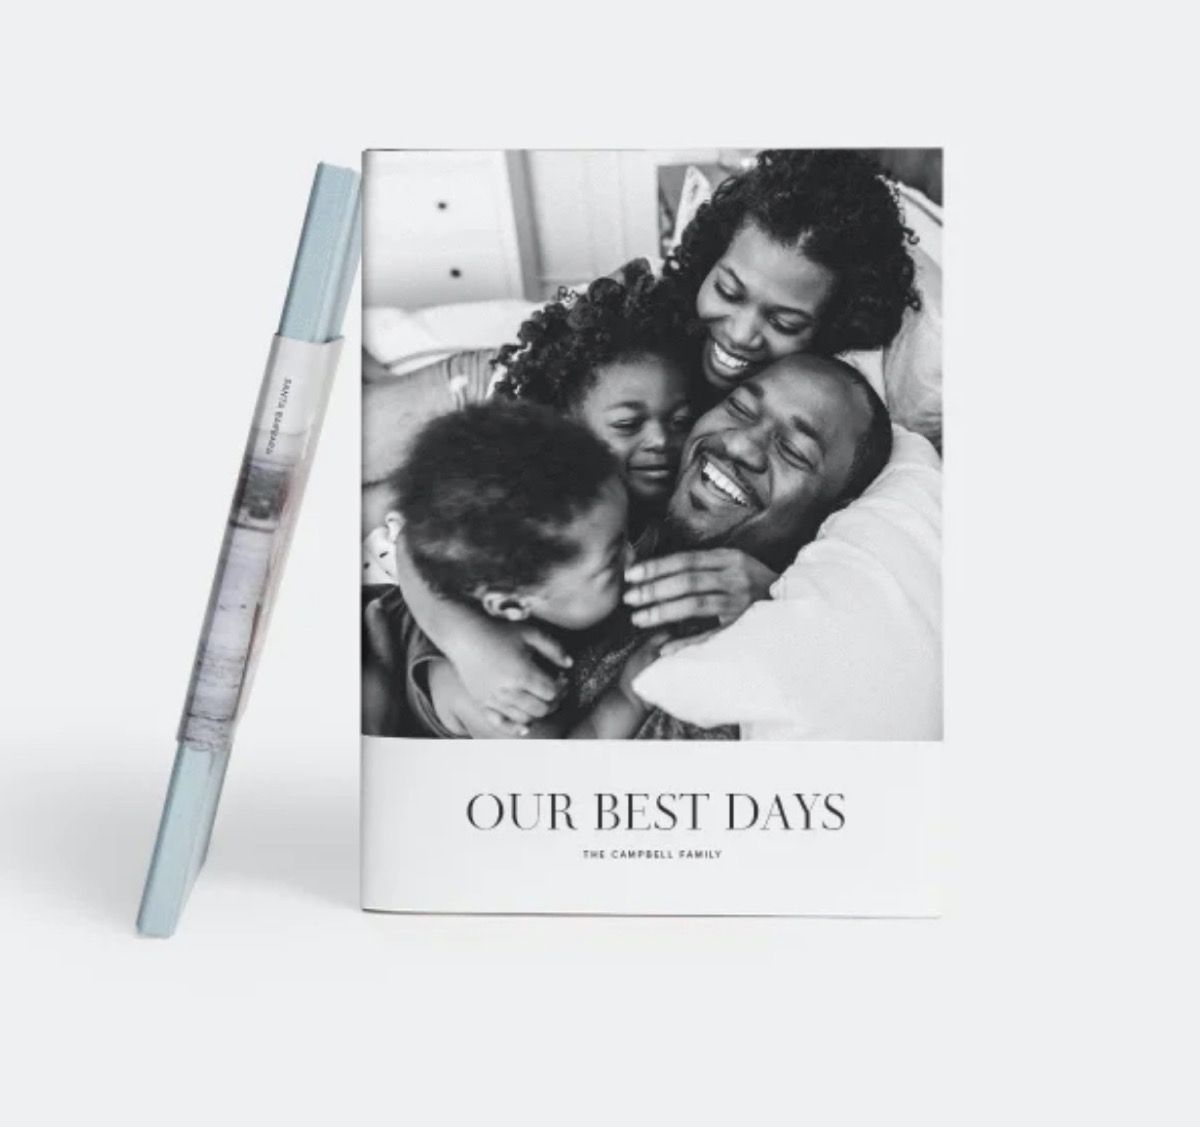 фото-књига са насмејаном црном породицом у црно-белој фотографији на корицама